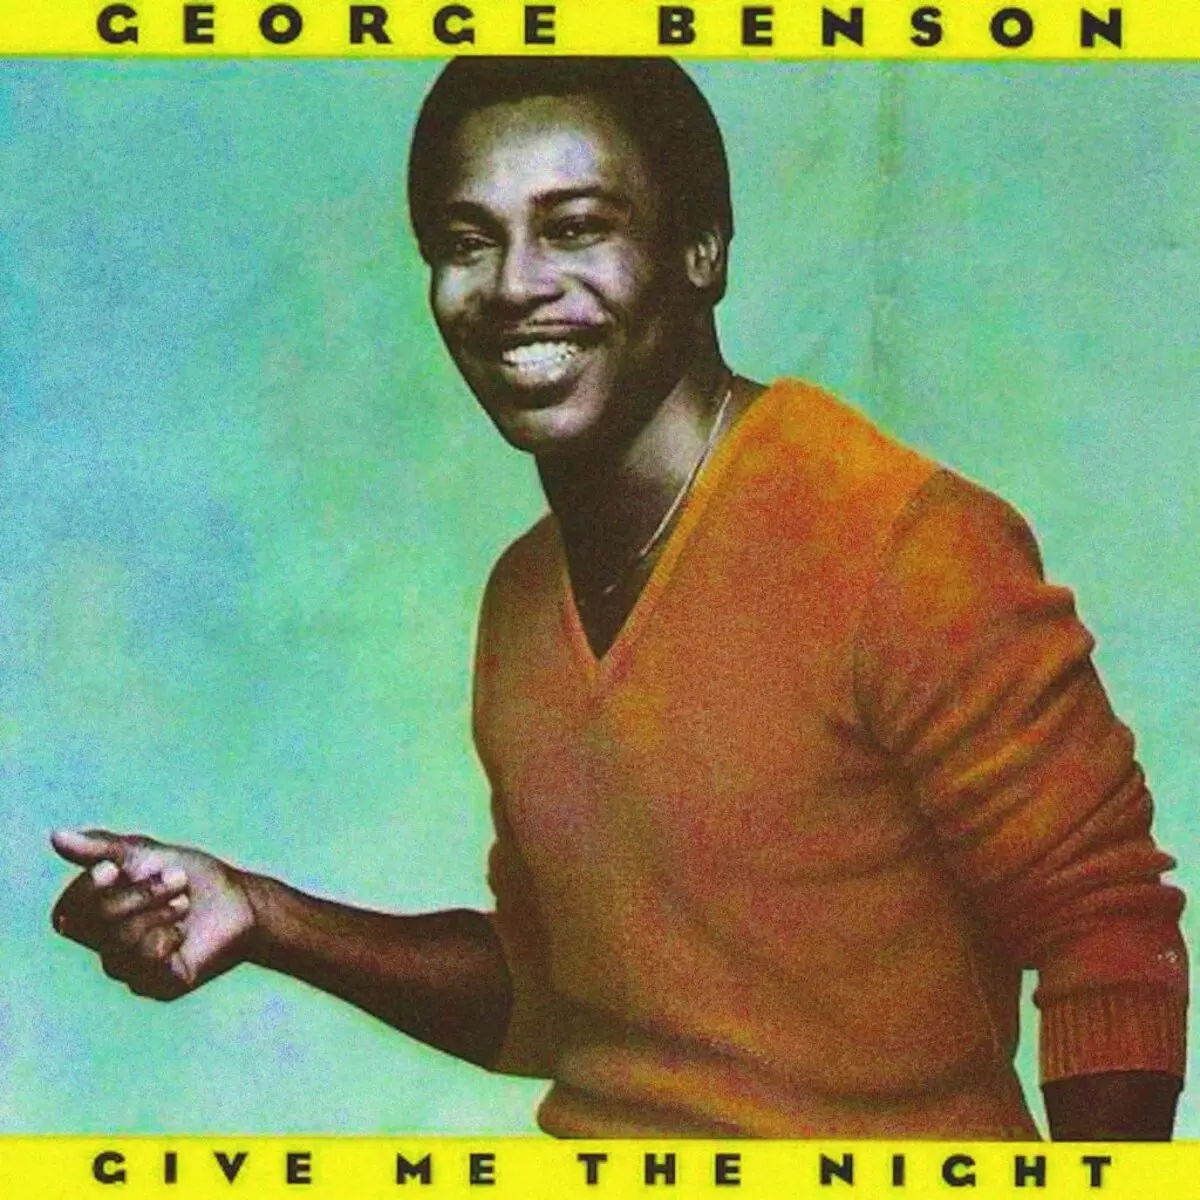 Δώστε μου τη νύχτα (1980) - George Benson - όλα σχετικά με το άλμπουμ ...